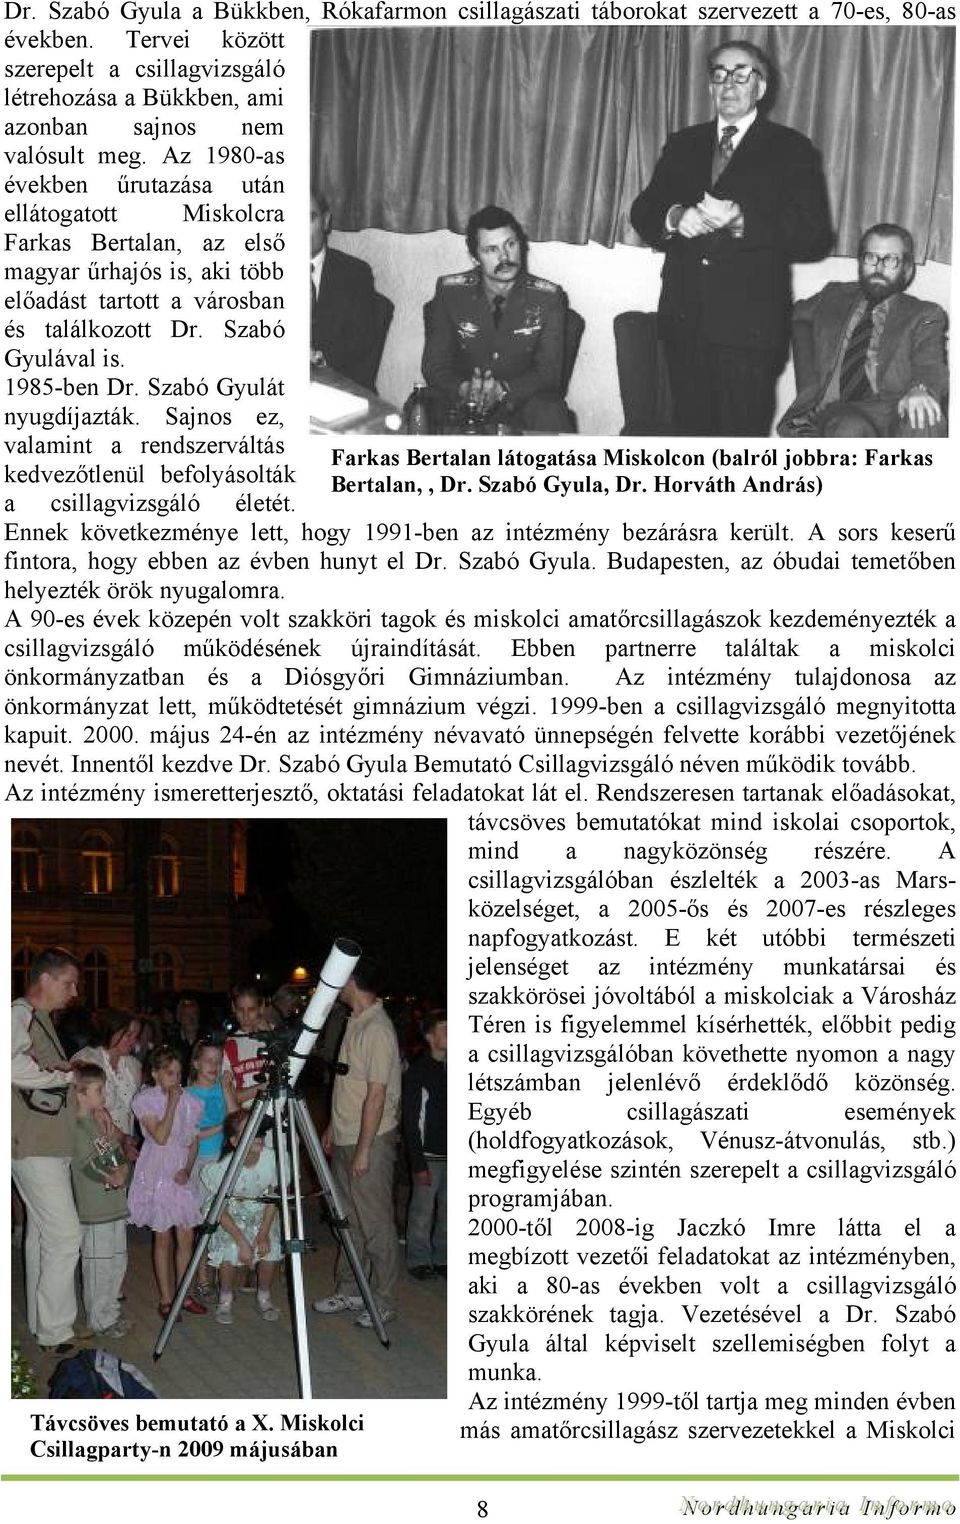 Szabó Gyulát nyugdíjazták. Sajnos ez, valamint a rendszerváltás kedvezőtlenül befolyásolták a csillagvizsgáló életét. Ennek következménye lett, hogy 1991-ben az intézmény bezárásra került.